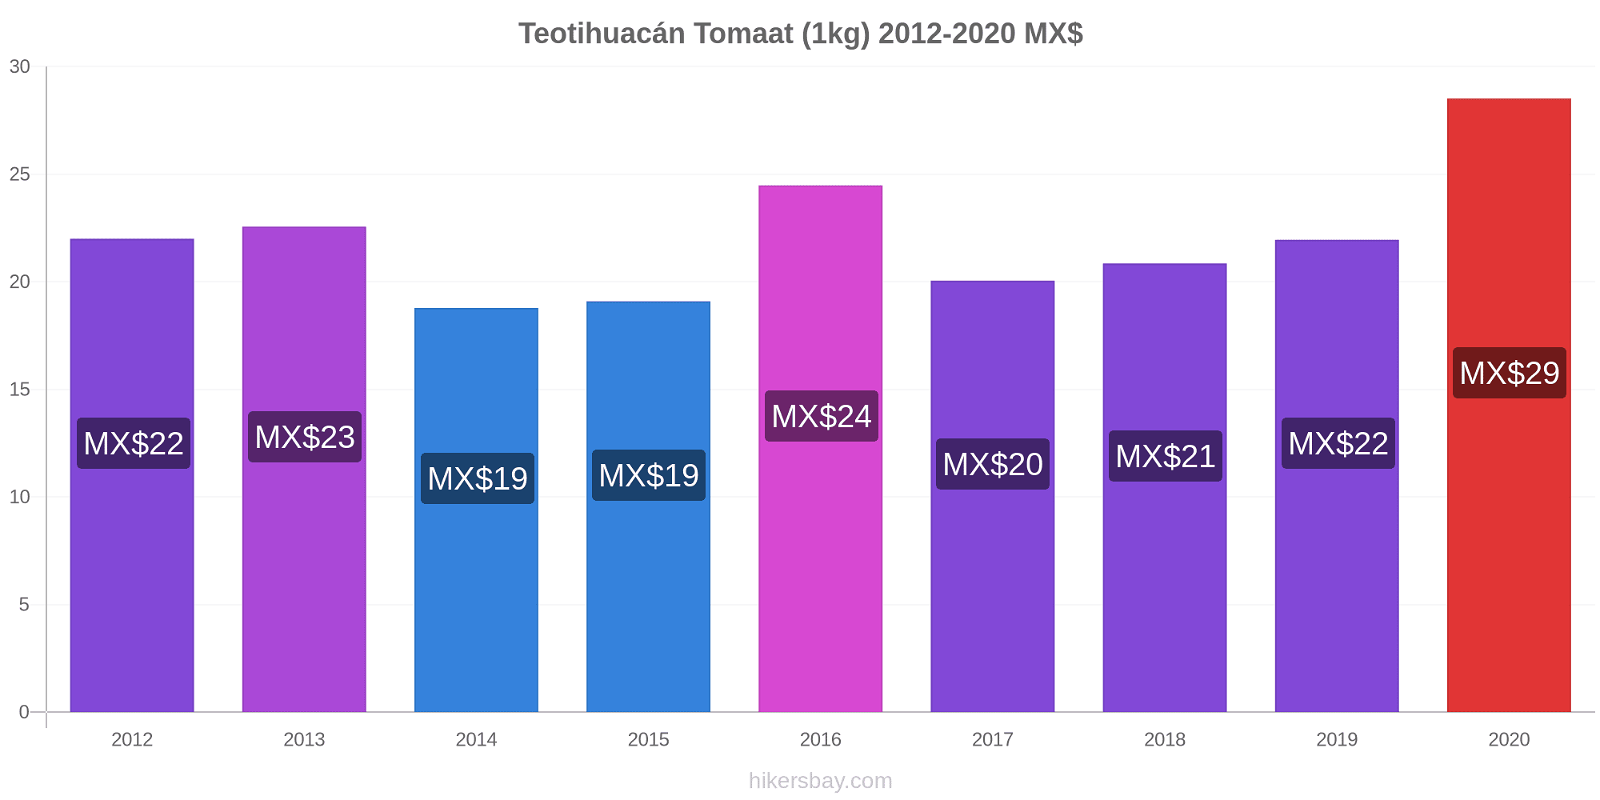 Teotihuacán prijswijzigingen Tomaat (1kg) hikersbay.com